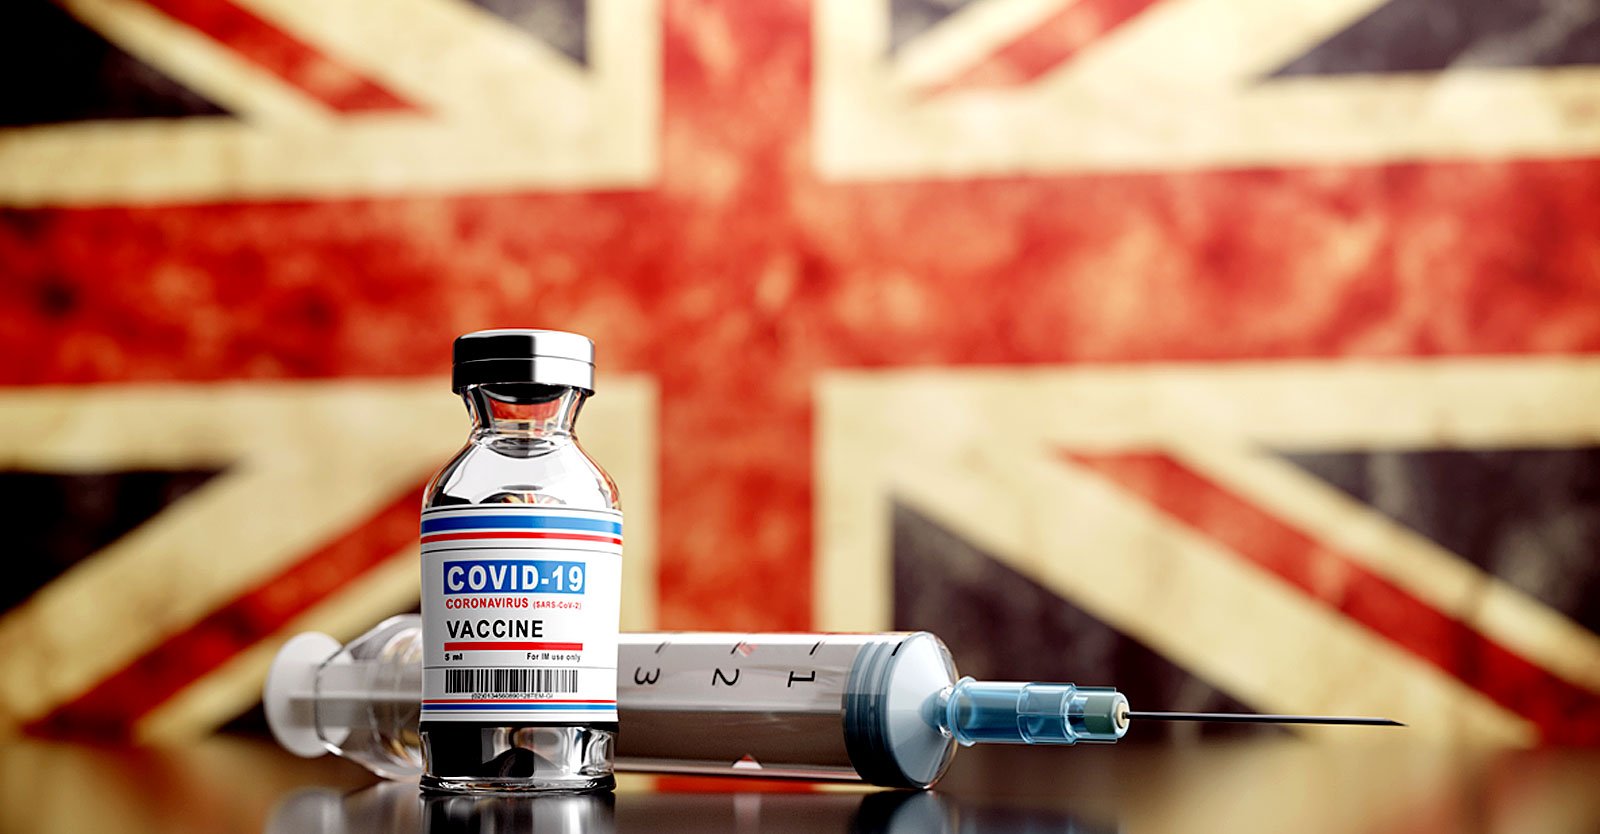 ที่ปรึกษาทางการแพทย์ของสหราชอาณาจักรเตือนการติดตามวัคซีน COVID อย่างรวดเร็ว